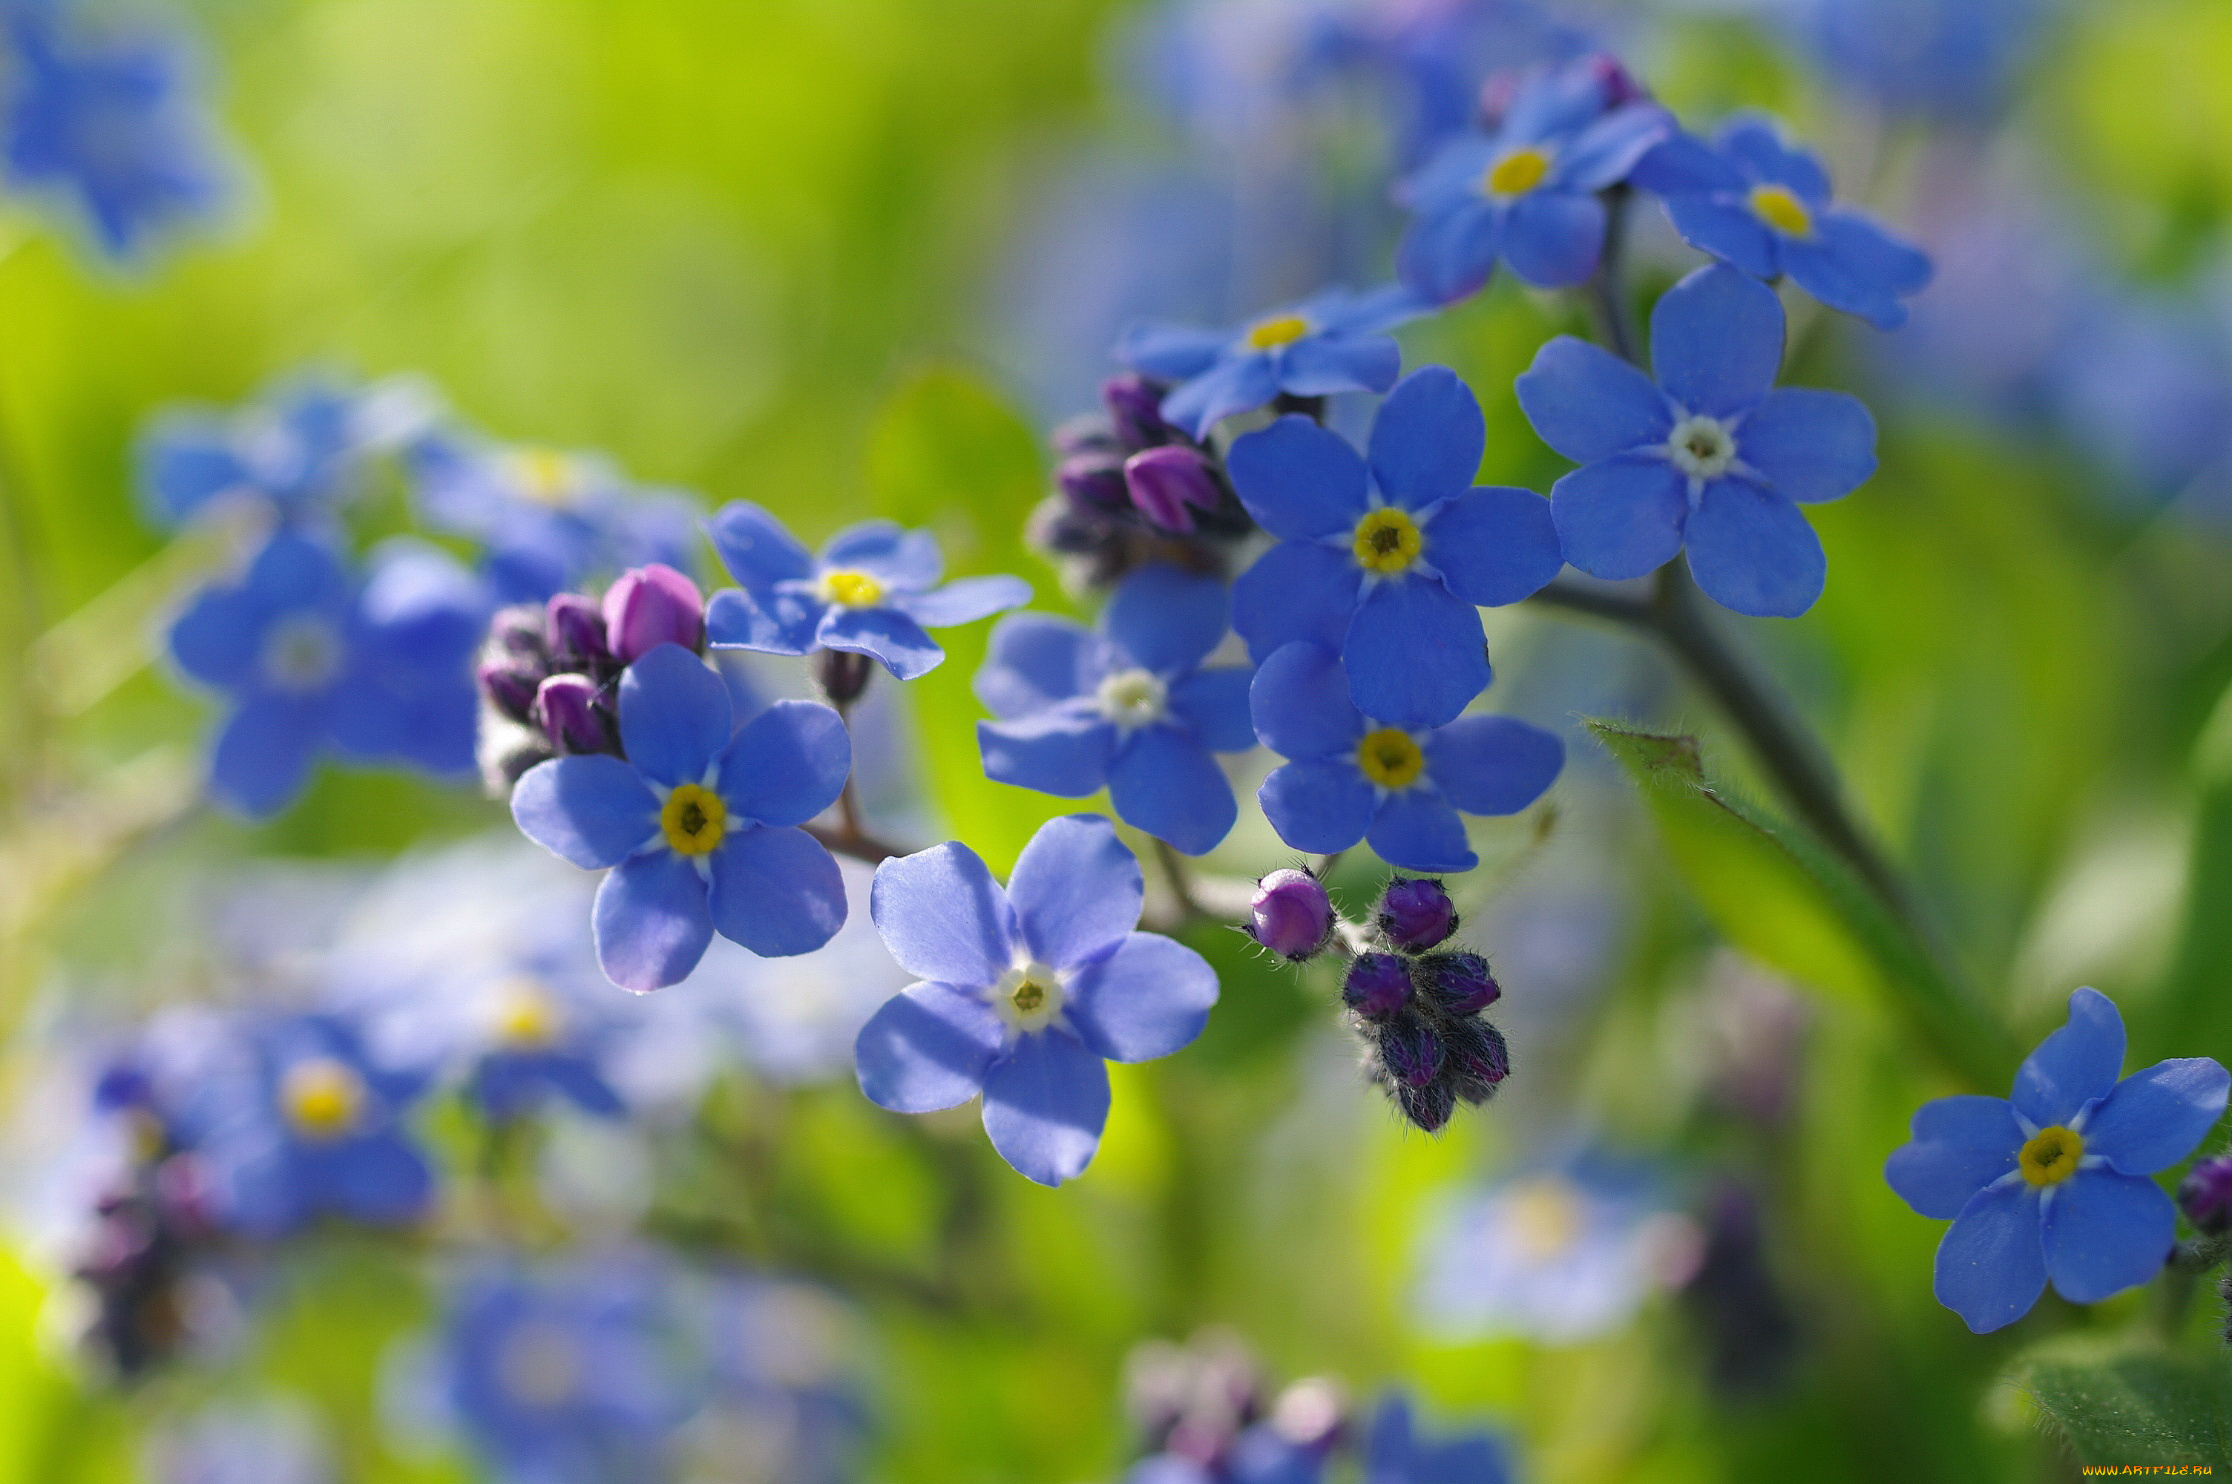 цветы, незабудки, первоцветы, нежность, радость, дача, май, макро, природа, флора, голубой, цвет, весна, красота